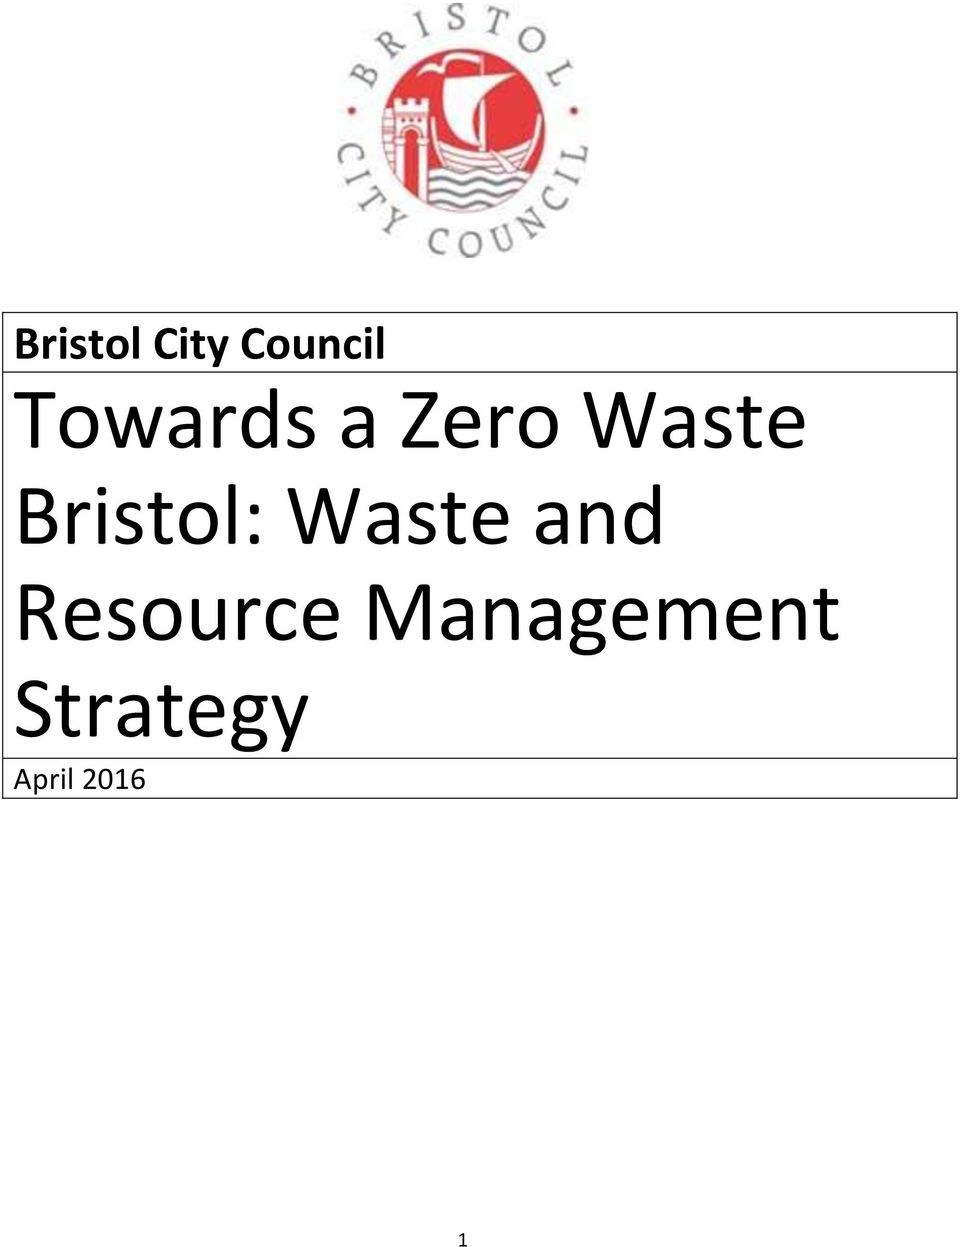 Bristol: Waste and